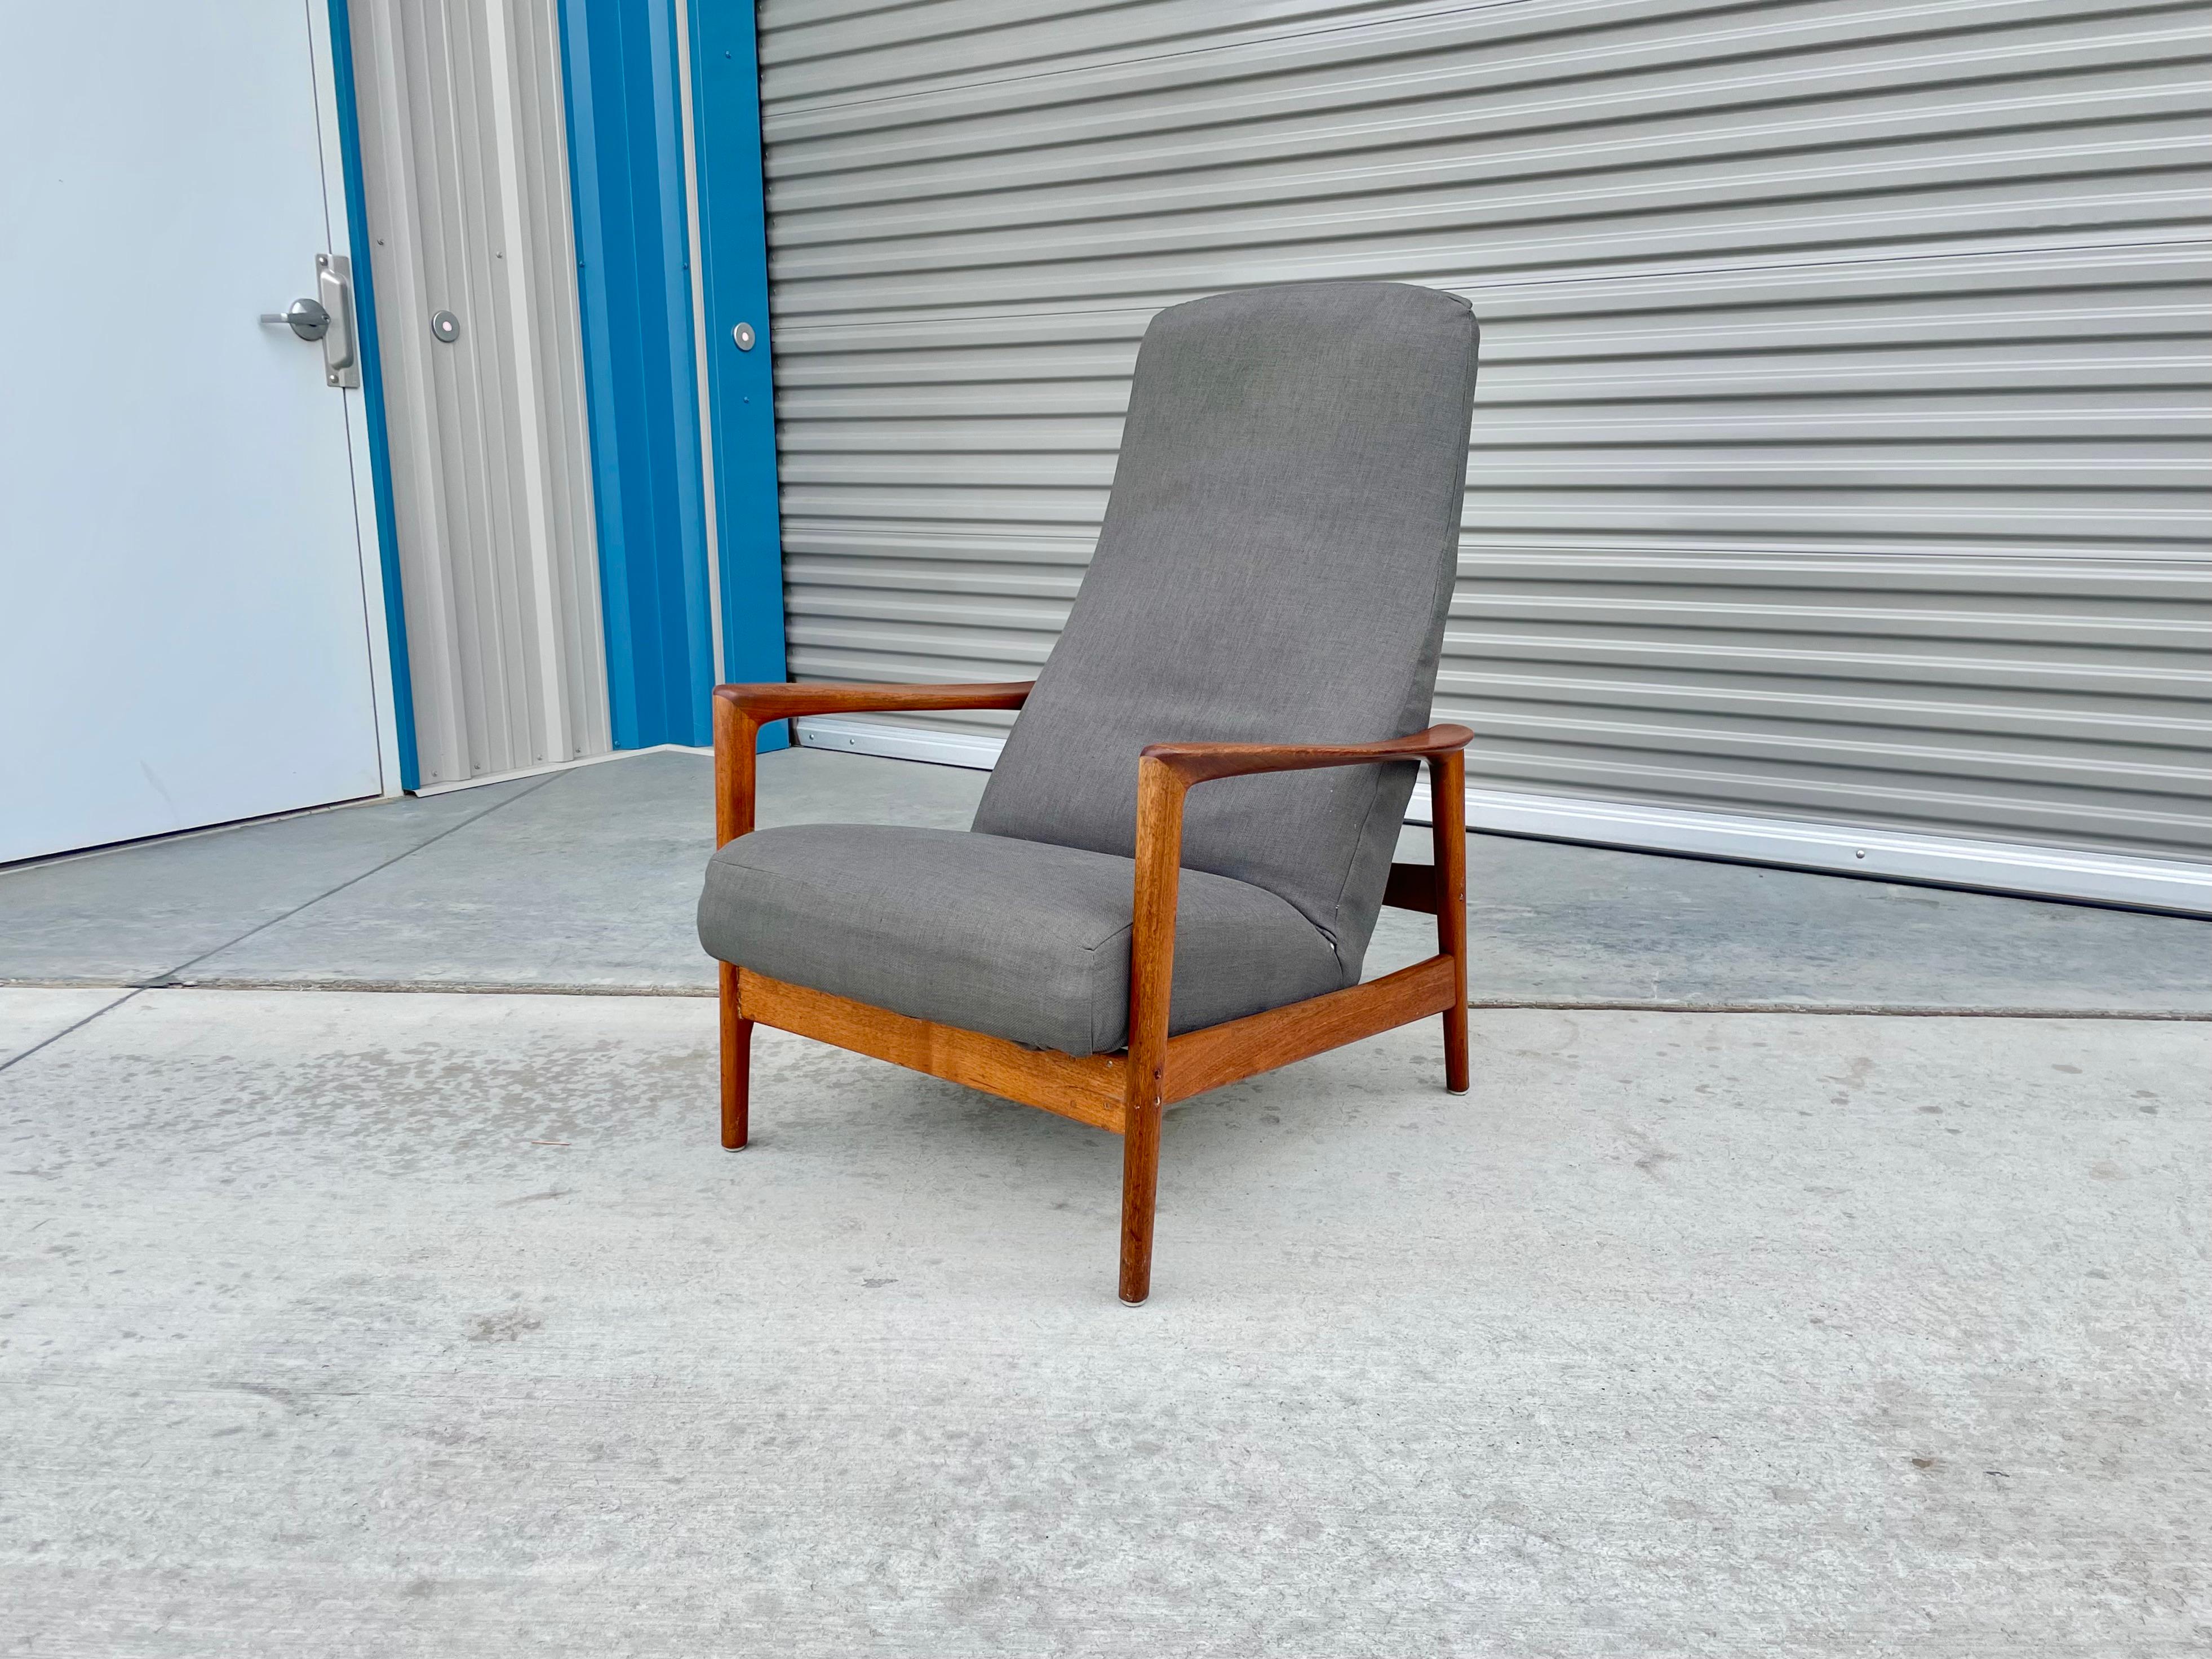 Cette chaise longue en noyer du milieu du siècle a été conçue par Folke/One et fabriquée par Dux en Suède vers les années 1960. Ce fantastique fauteuil inclinable est doté d'un cadre en noyer et d'un revêtement gris. Le fauteuil est également doté